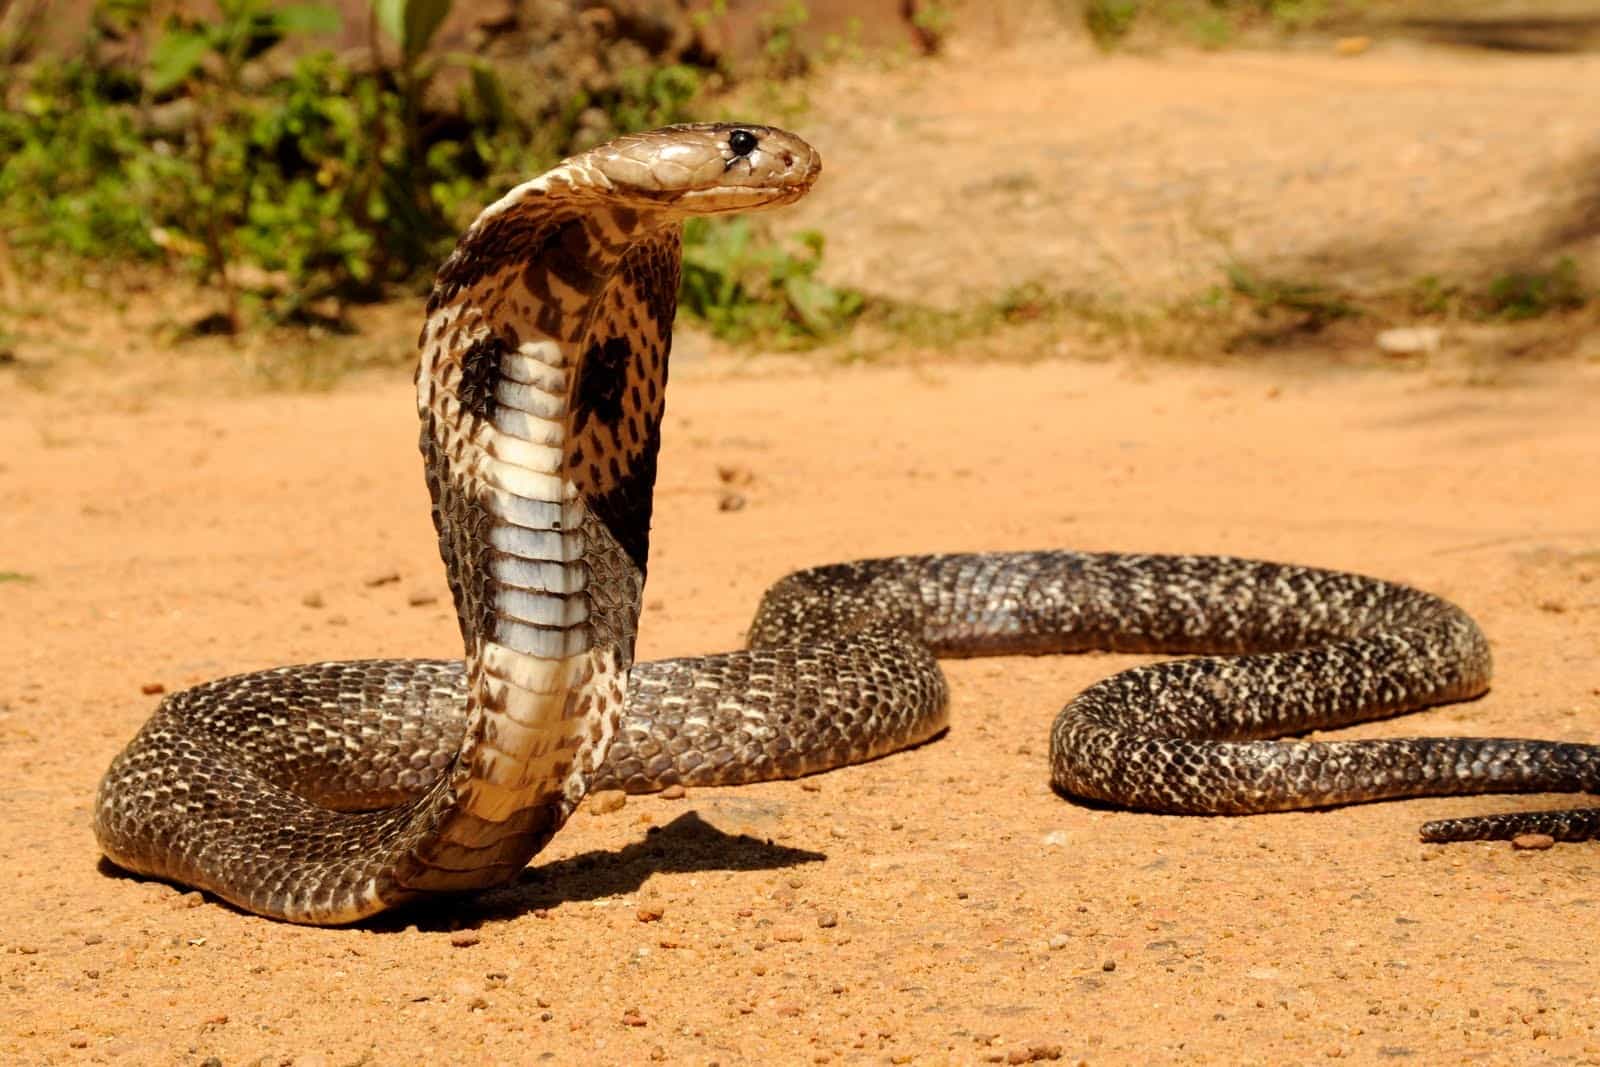 Змея королевская кобра: описание, внешность и интересные факты про это животное